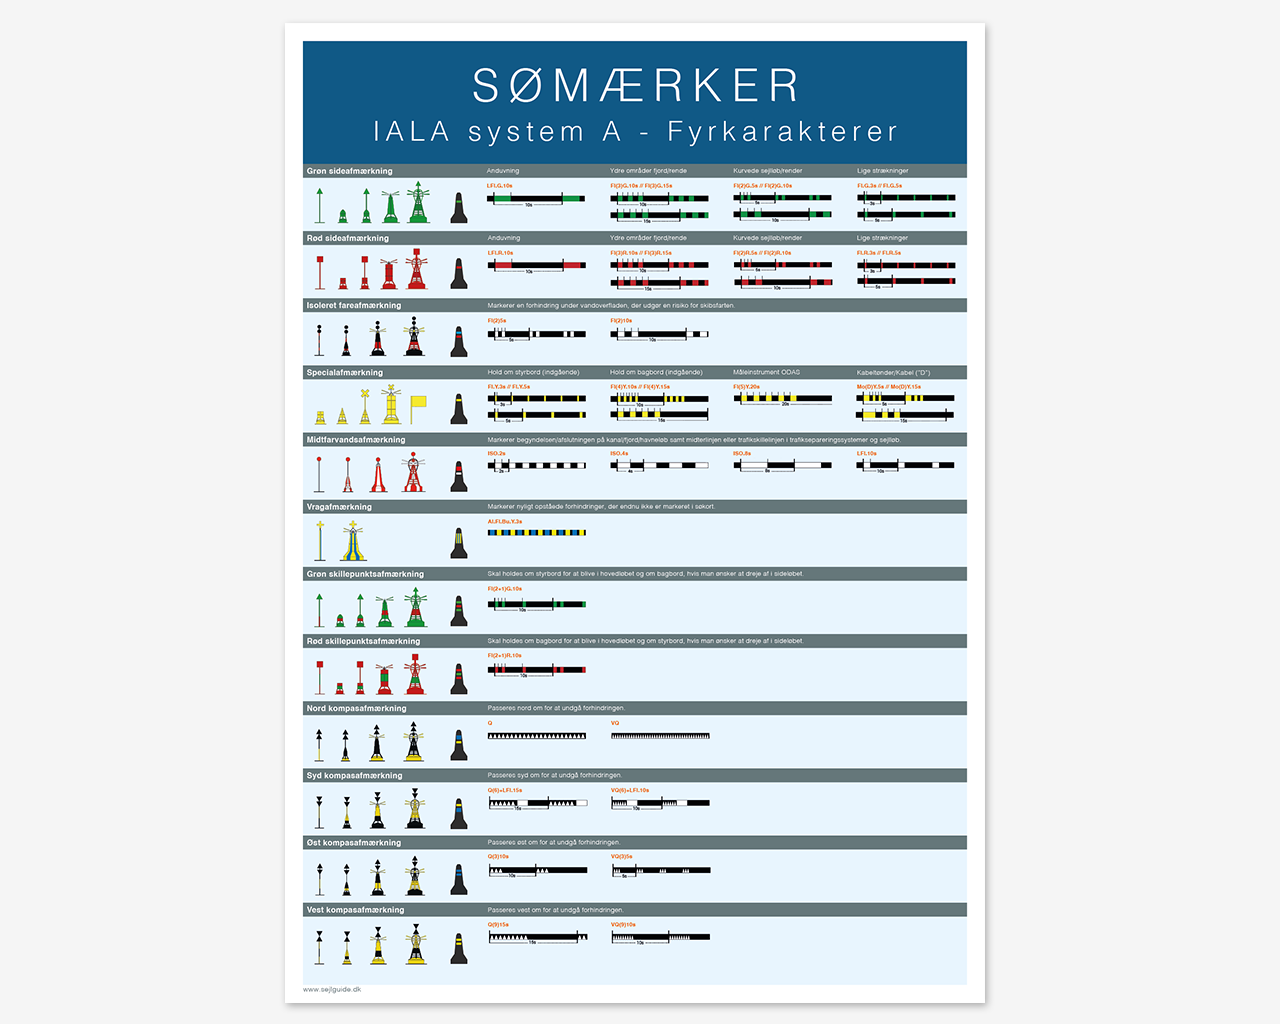 Sømærker - IALA system A - Fyrkarakterer